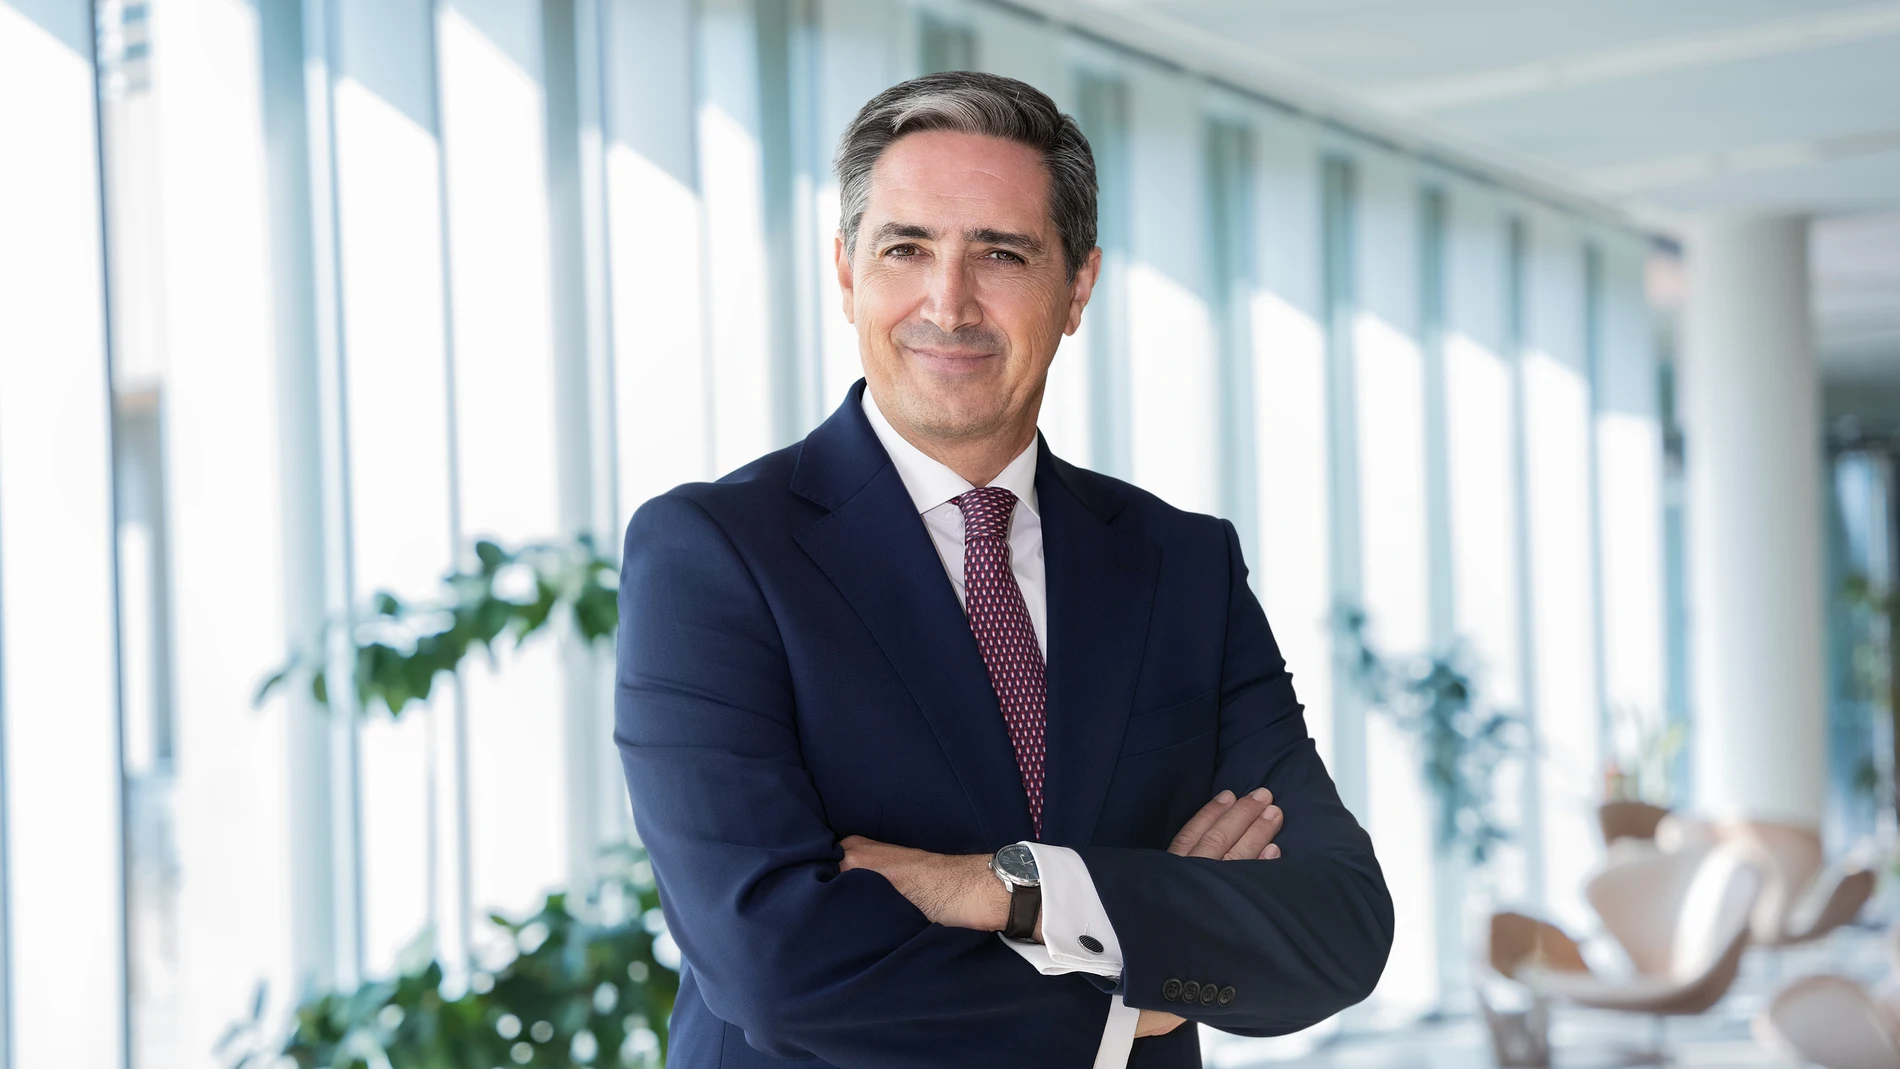 João Negrão es director ejecutivo de la EUIPO desde octubre pasado; la agencia europea está en Alicante desde hace 30 años.